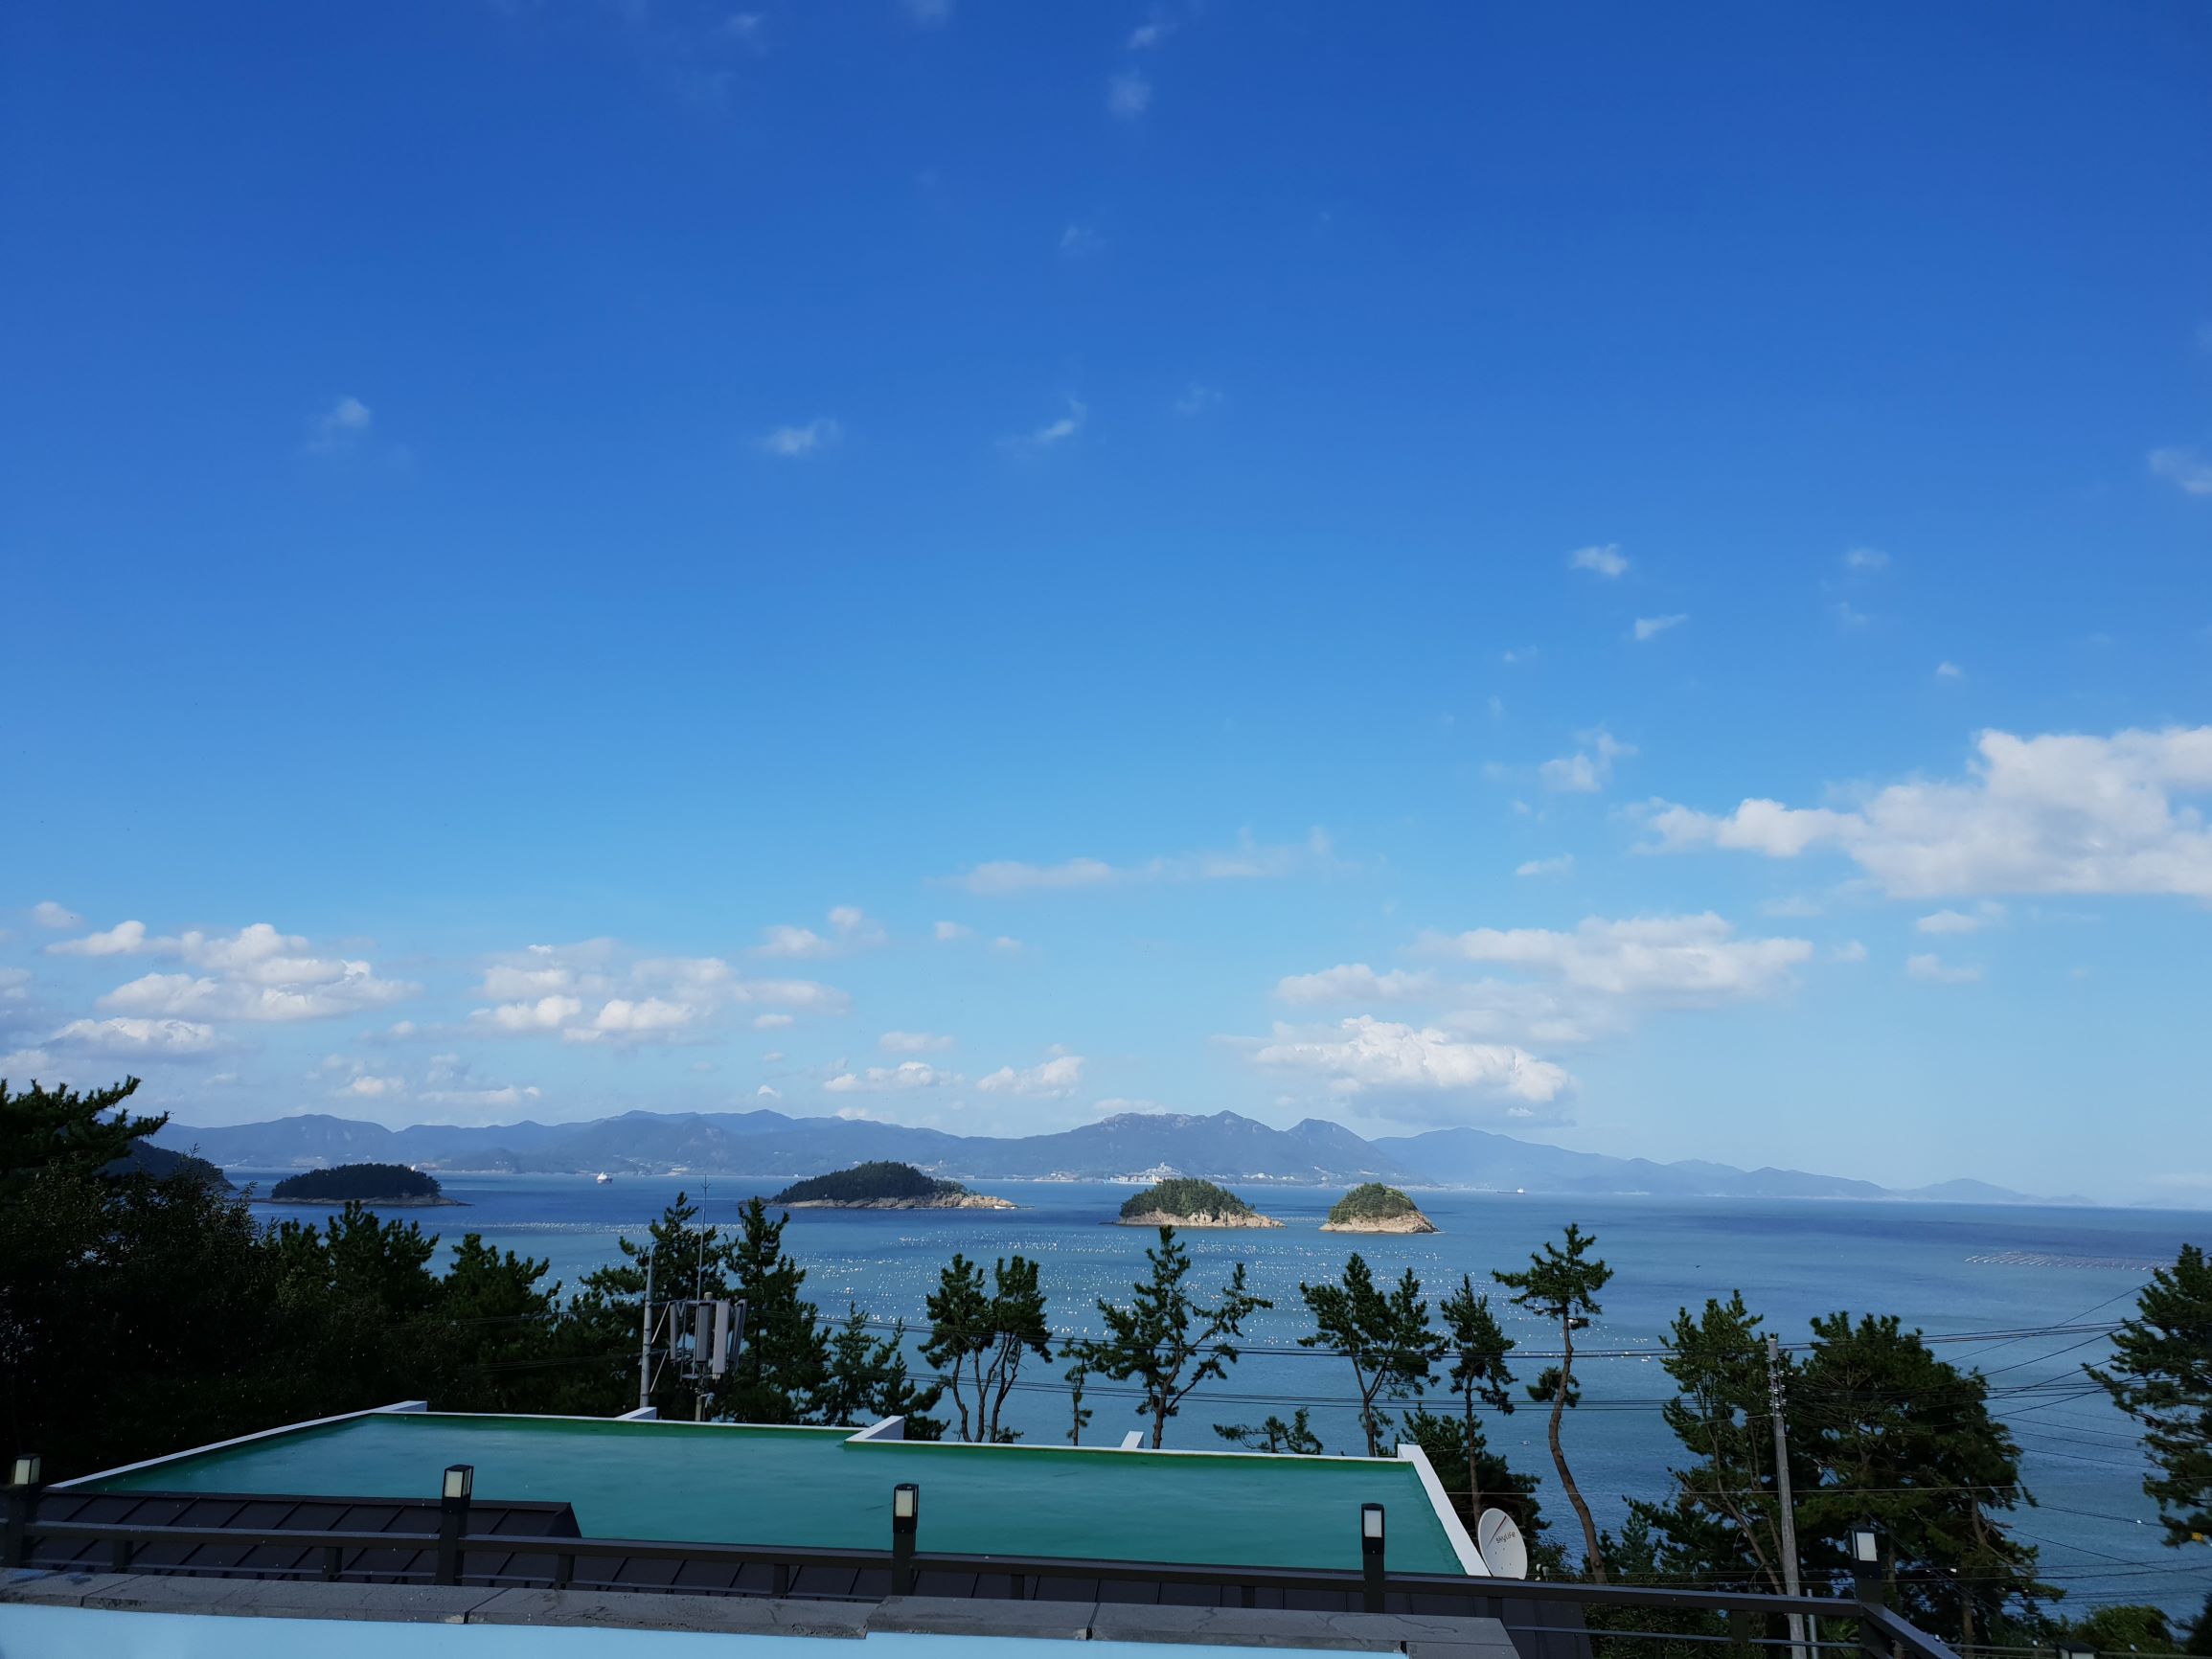 여수의 한 펜션 '아일랜드 보인다'라는 펜션에서 보이는 섬들과 파란 하늘, 그리고 수영장의 모습이다.